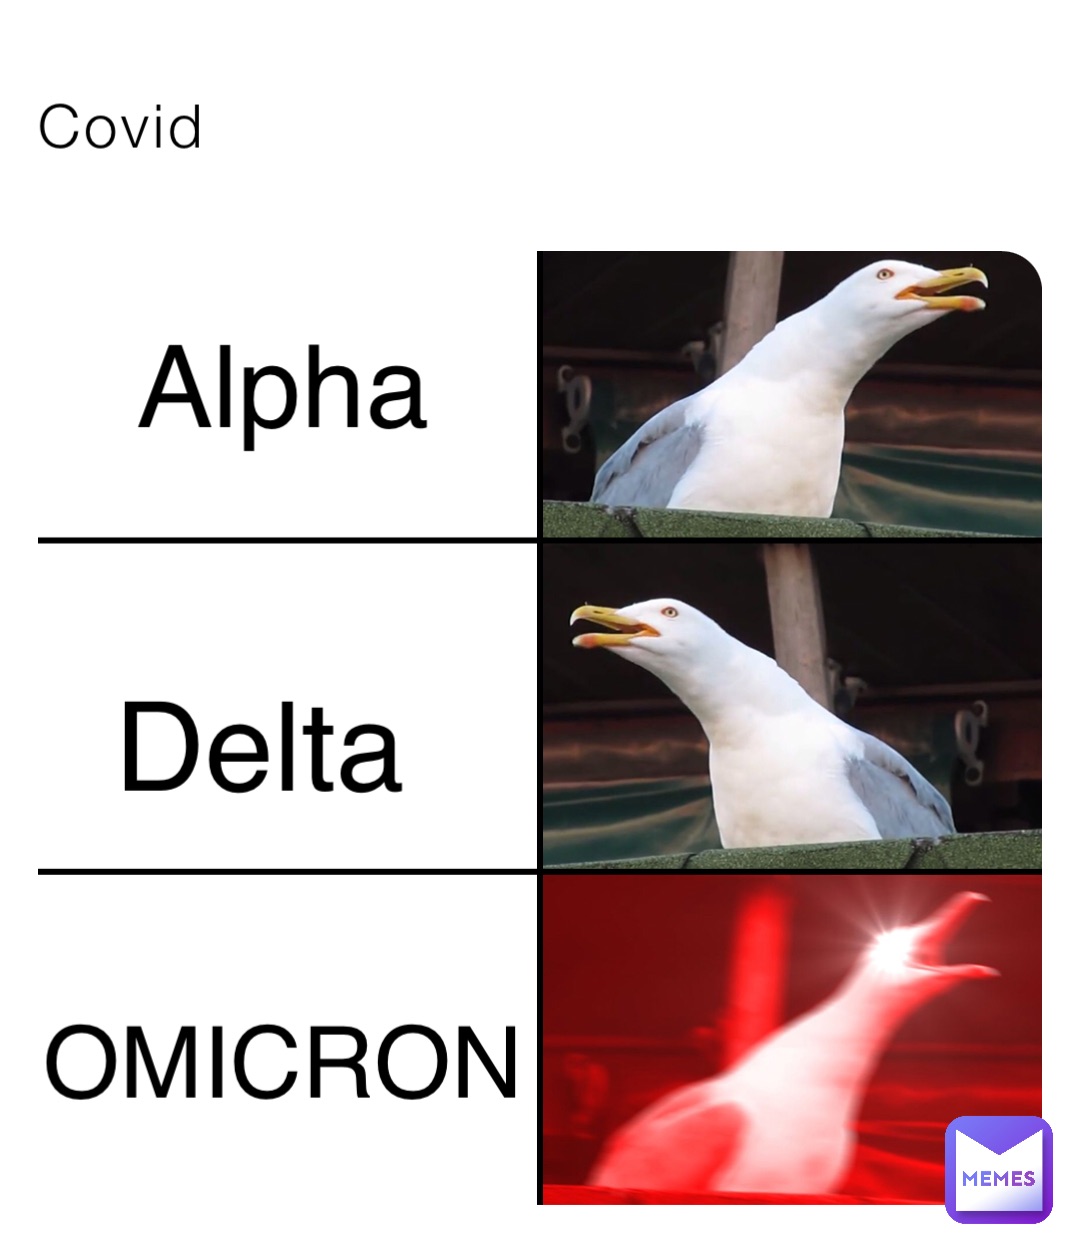 Covid Alpha Delta OMICRON